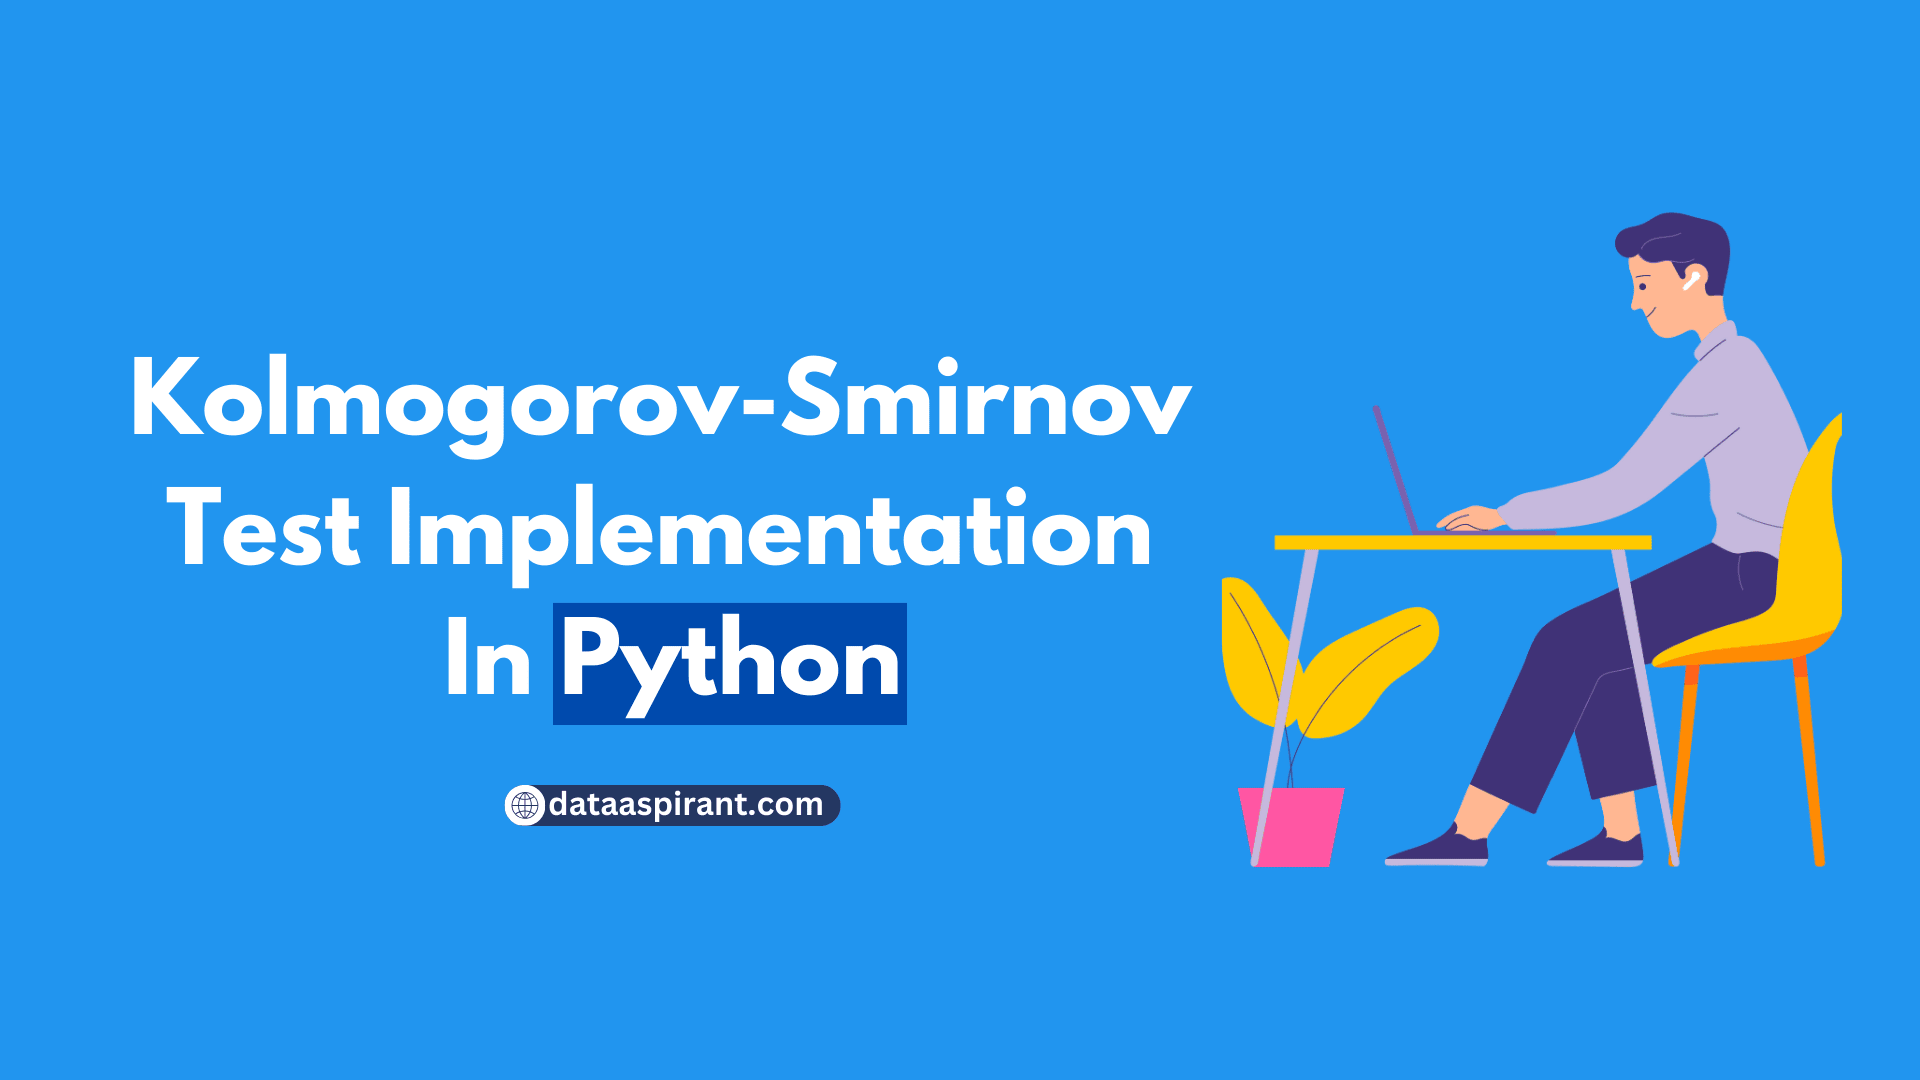 Kolmogorov-Smirnov Test Implementation In Python